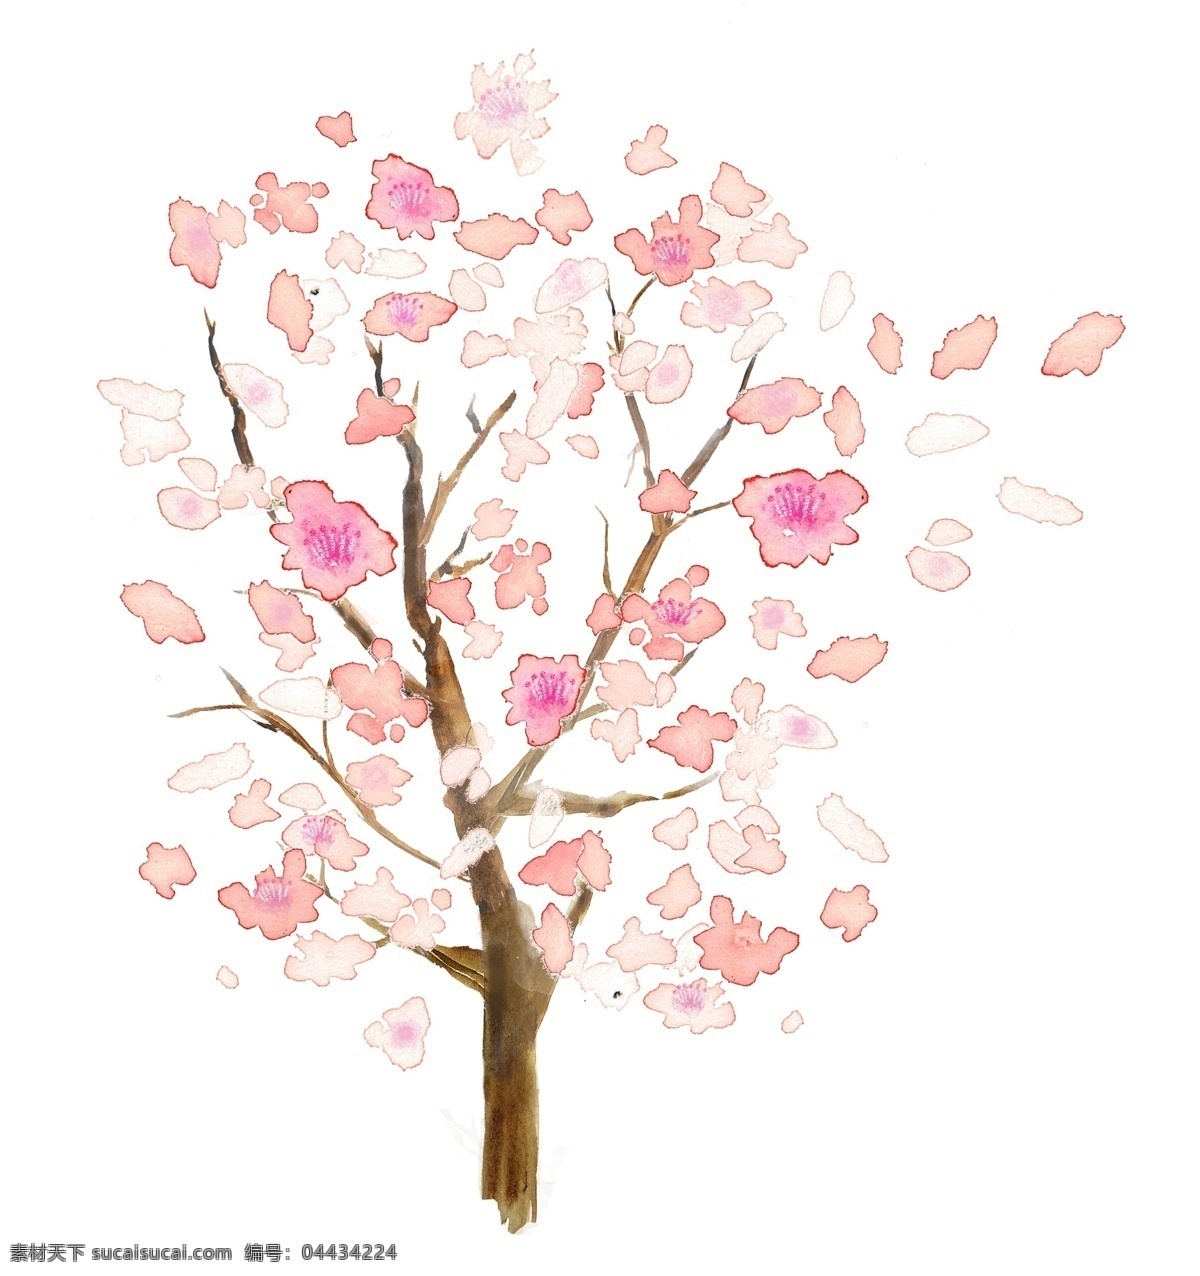 手绘 粉色 桃花 花瓣 树 元素 粉色桃花瓣 手绘桃花瓣 手绘桃花树 手绘花瓣 桃花瓣散花